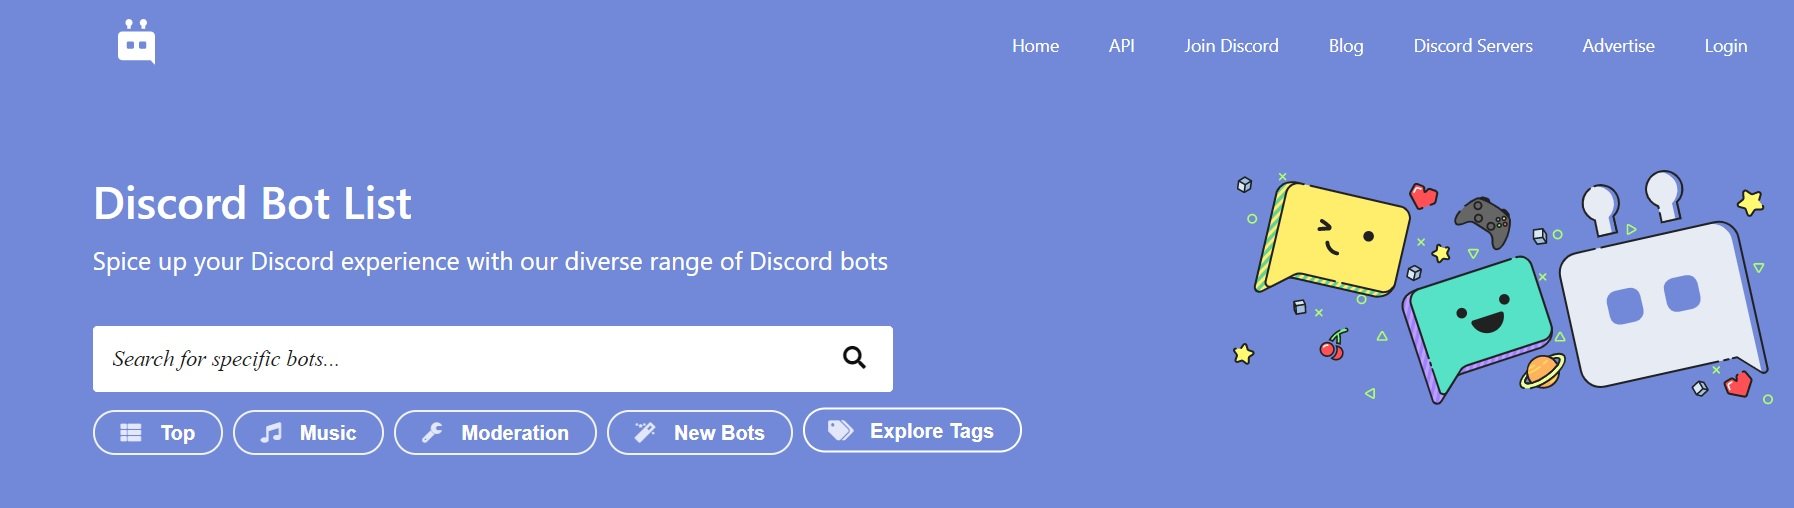 Veja como criar bot no Discord - TecMundo